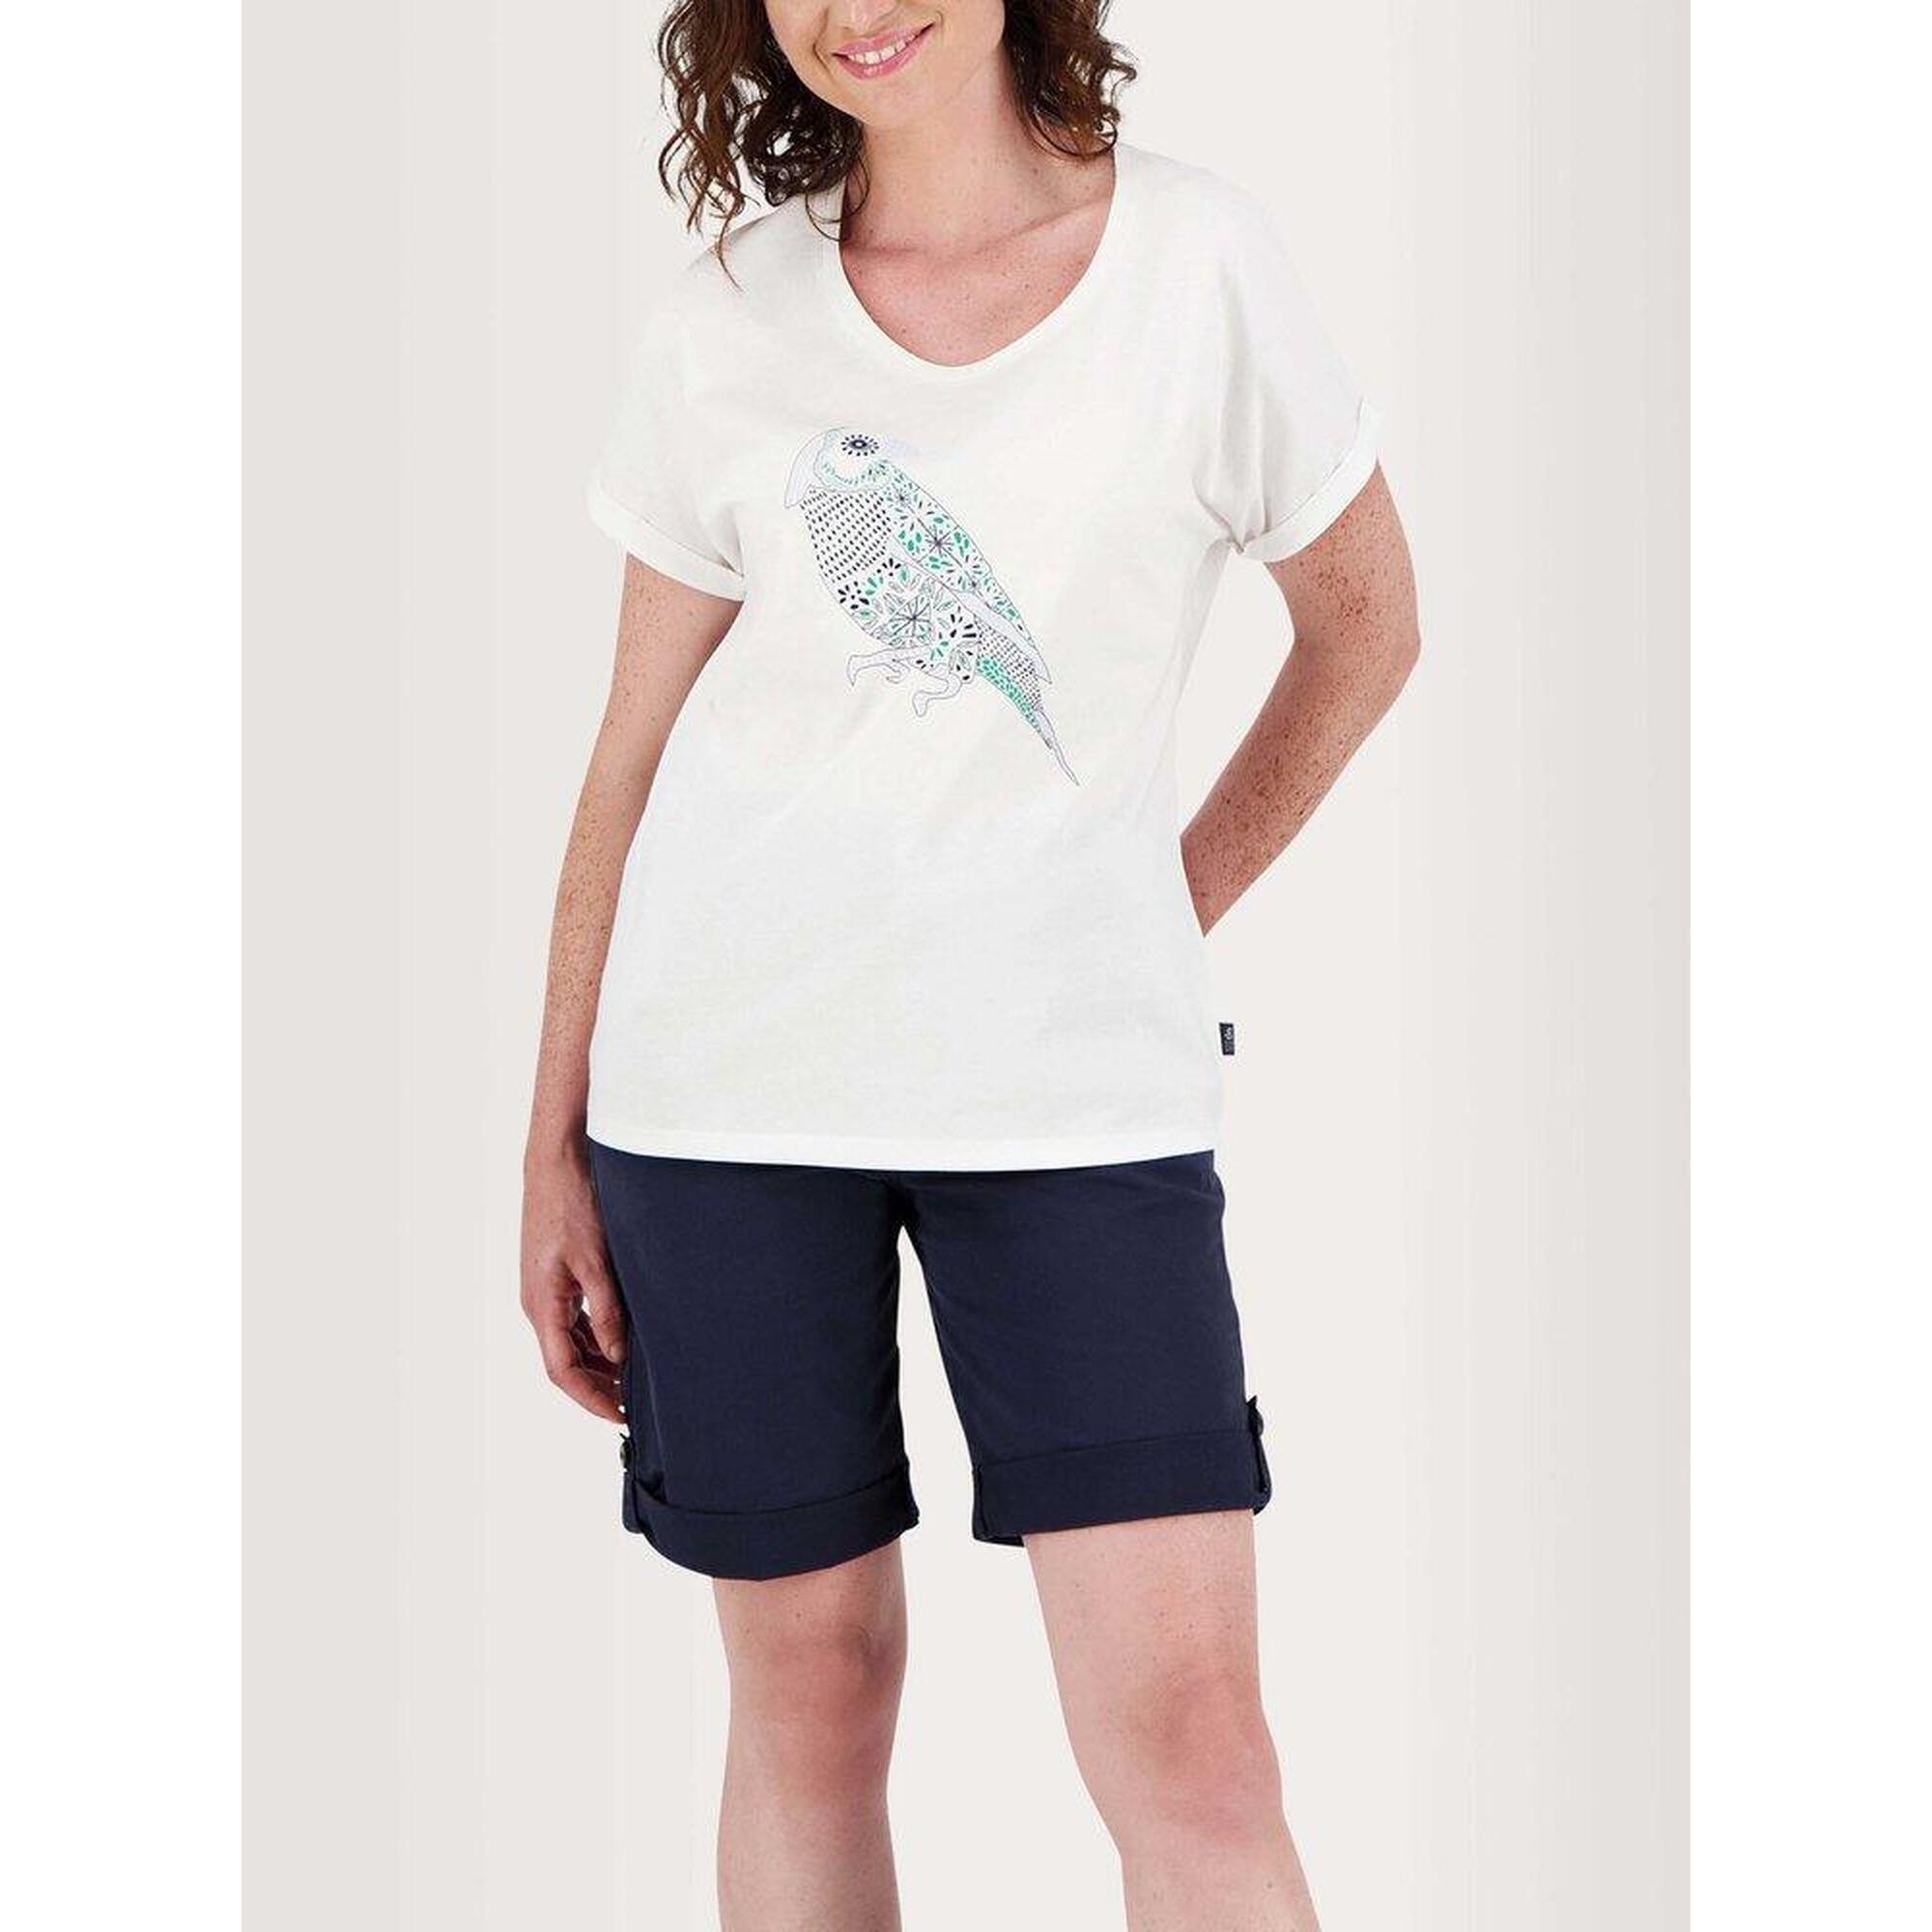 T-shirt manches courtes Femme - PAULITEE Arctique